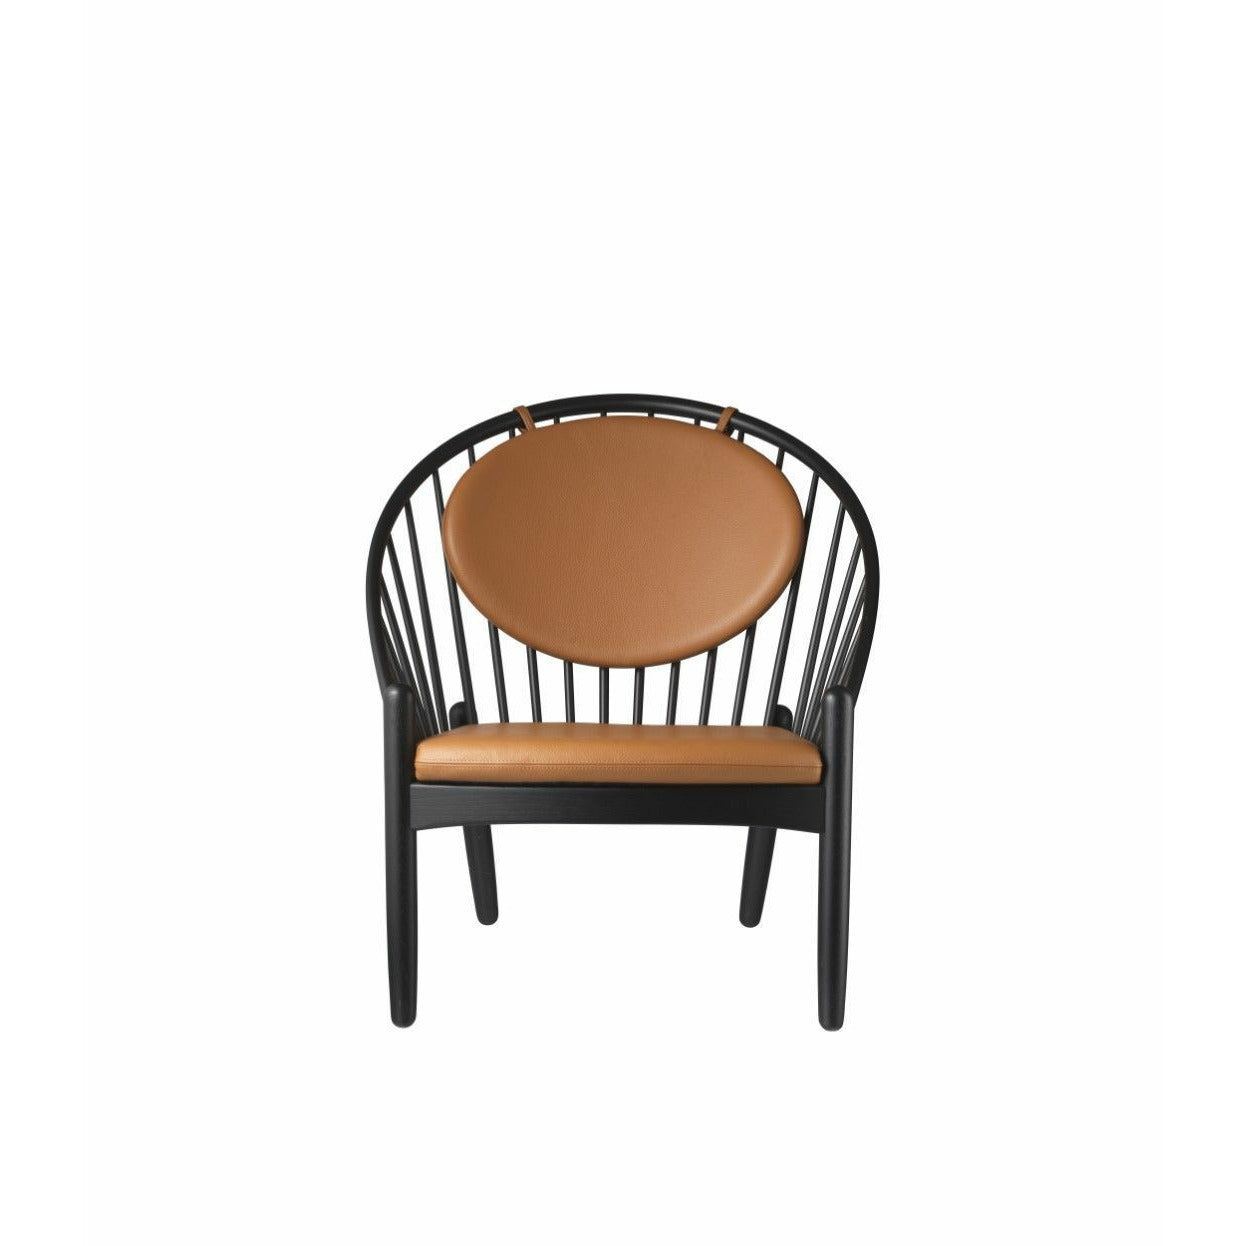 Fdb Møbler J166 Jørna Chair, Black/Cognac